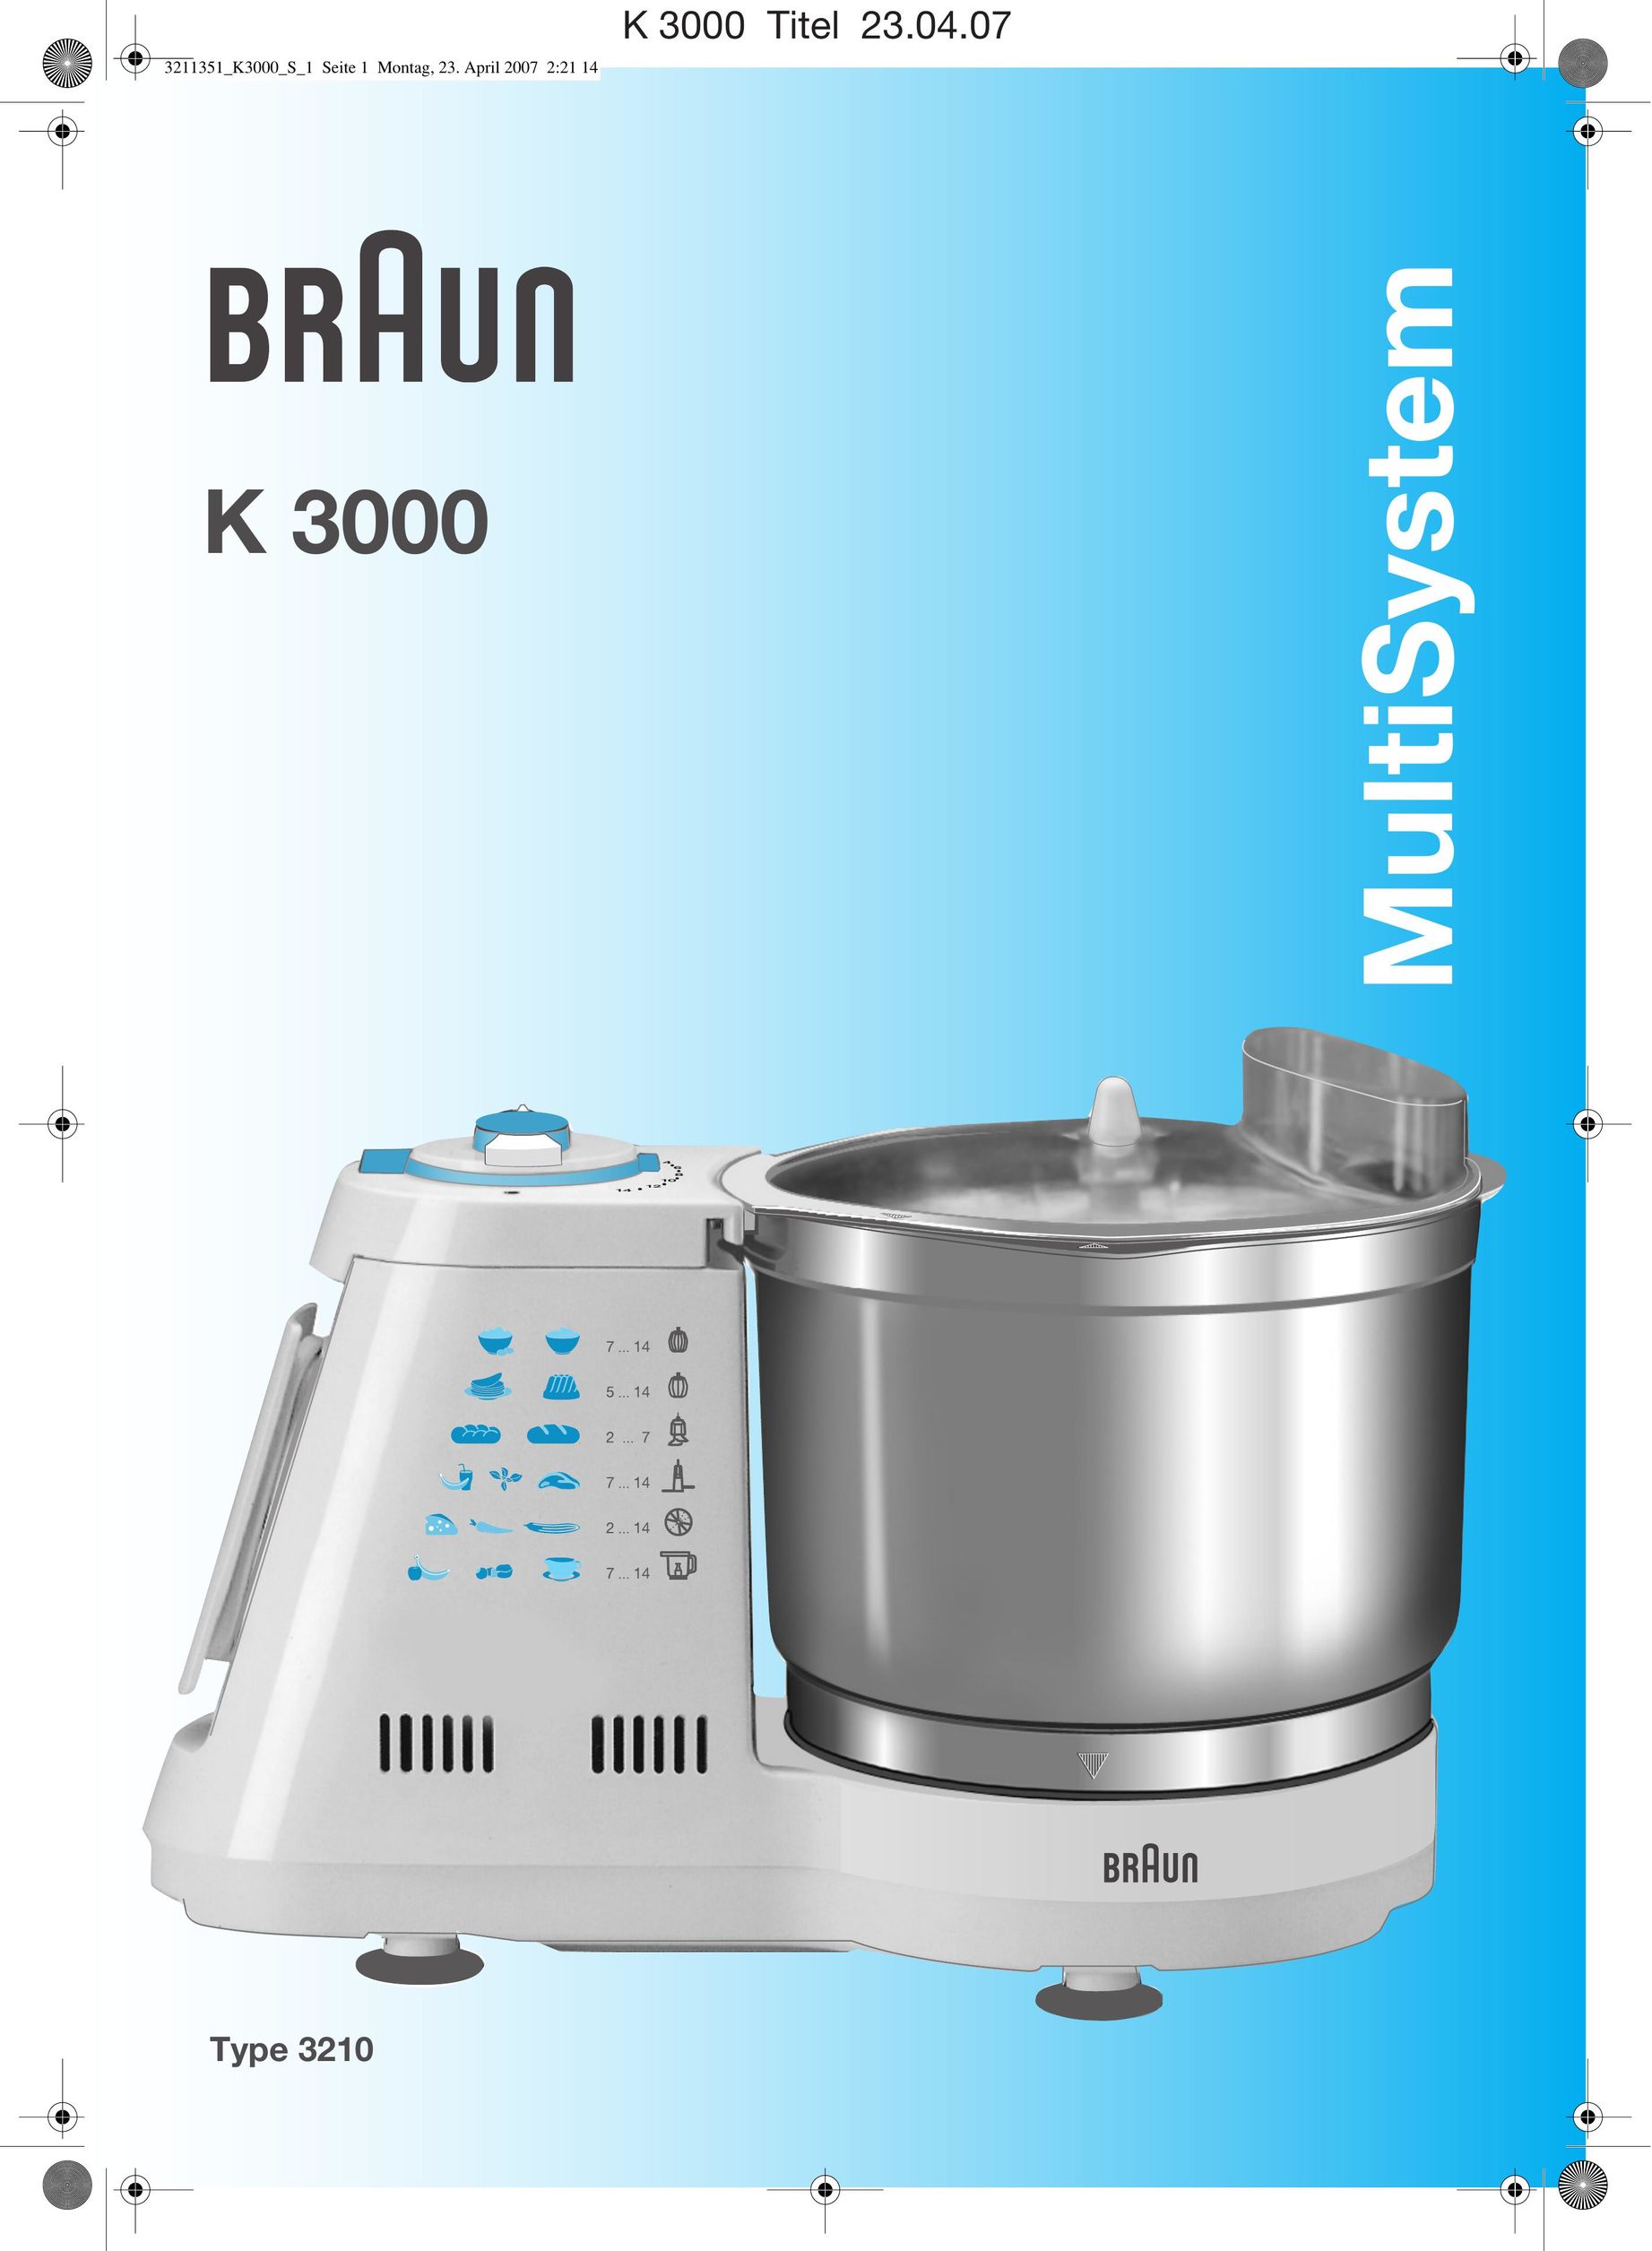 Braun K 3000 Blender User Manual